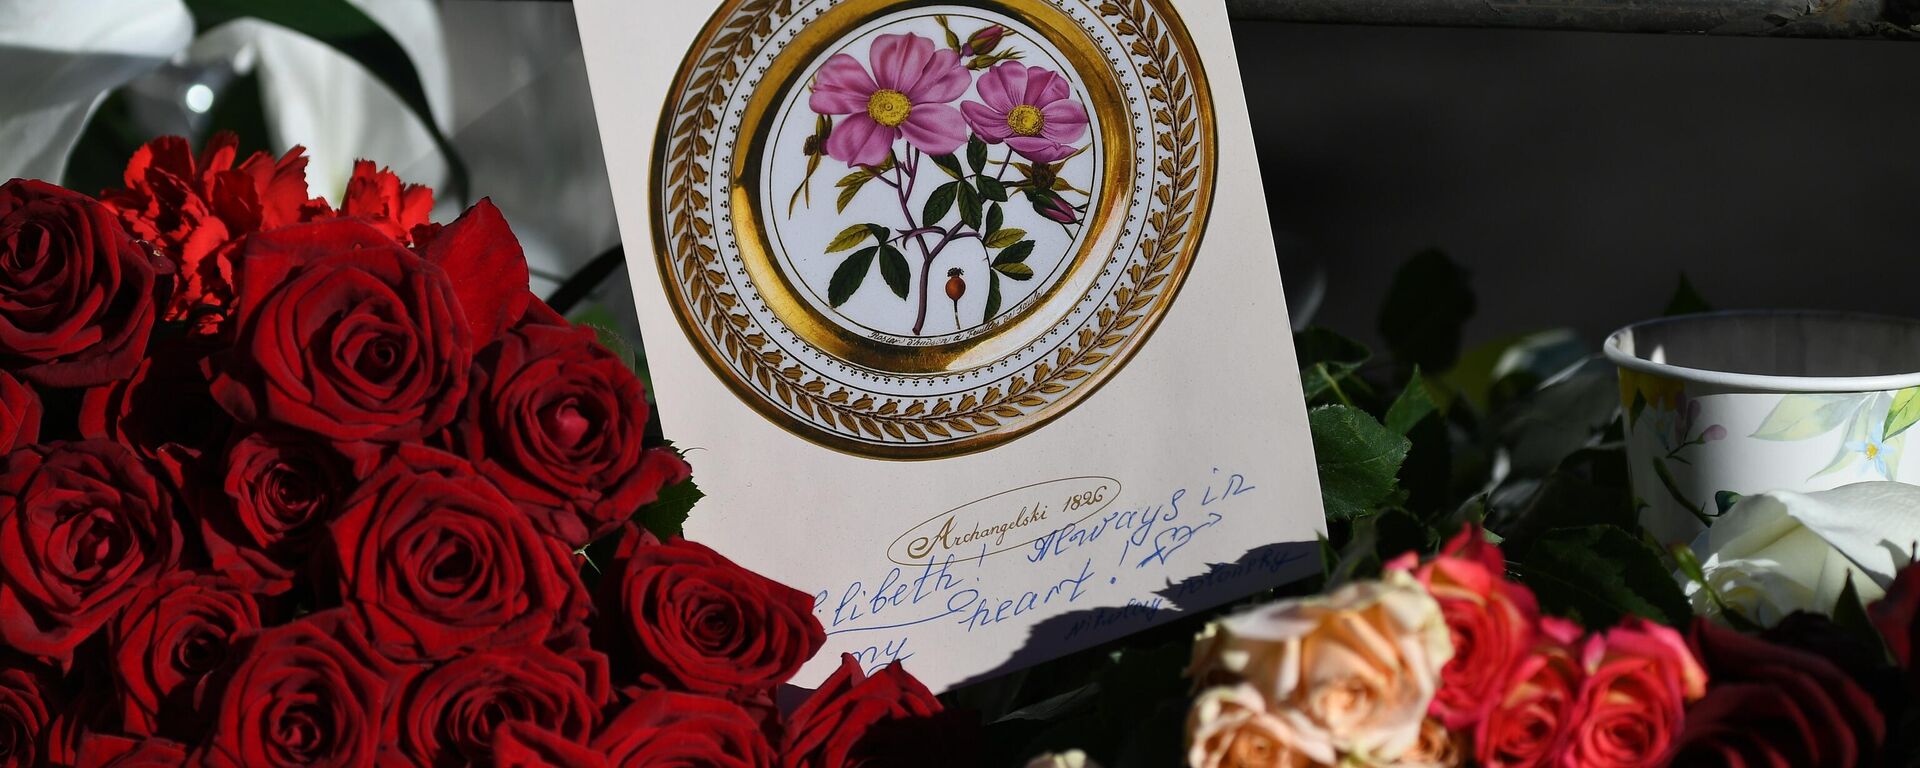 Цветы у посольства Великобритании в память о королеве Елизавете II - Sputnik Латвия, 1920, 09.09.2022